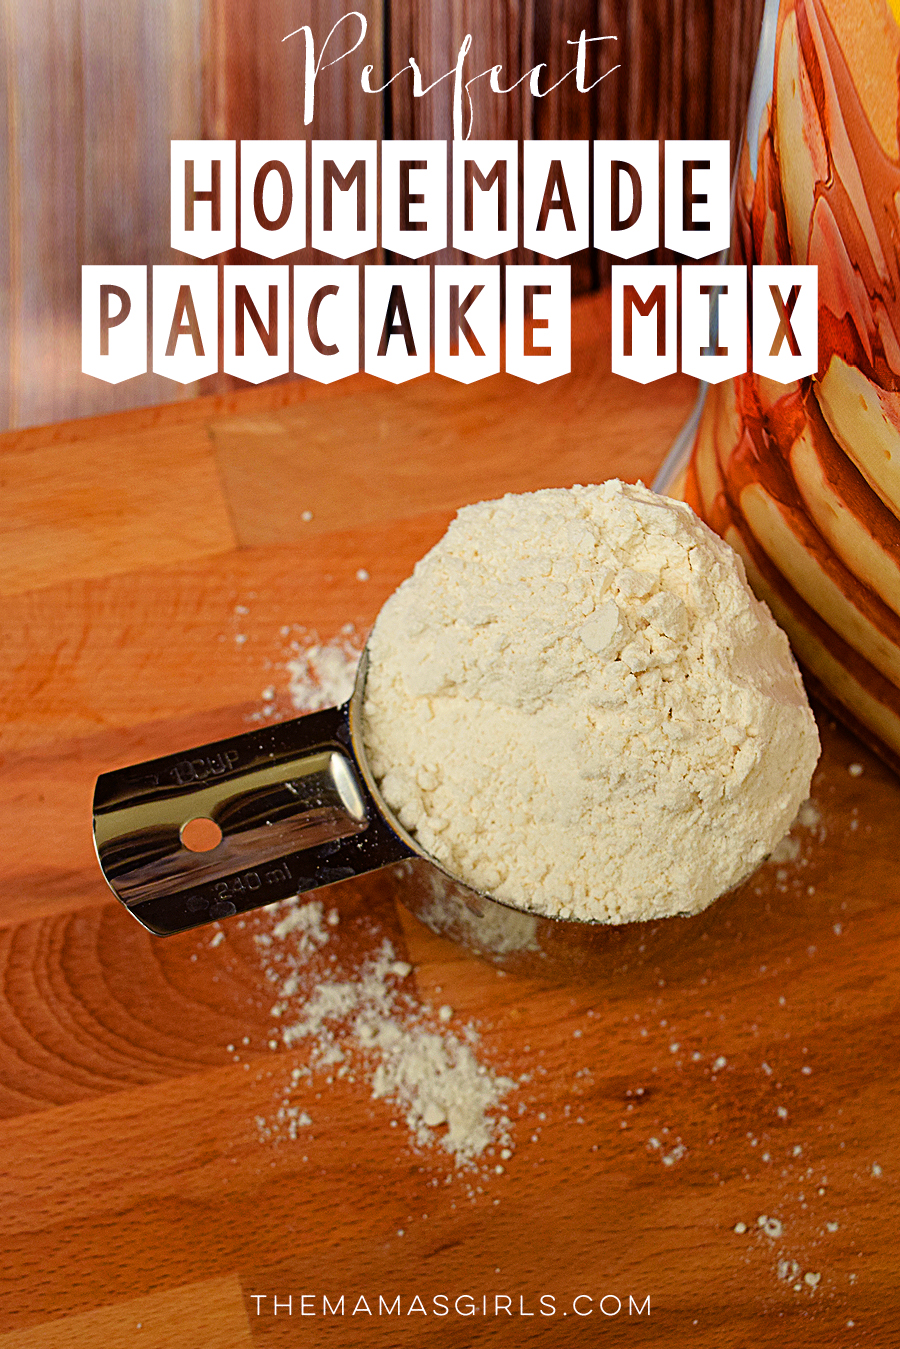 DIY pancake mix